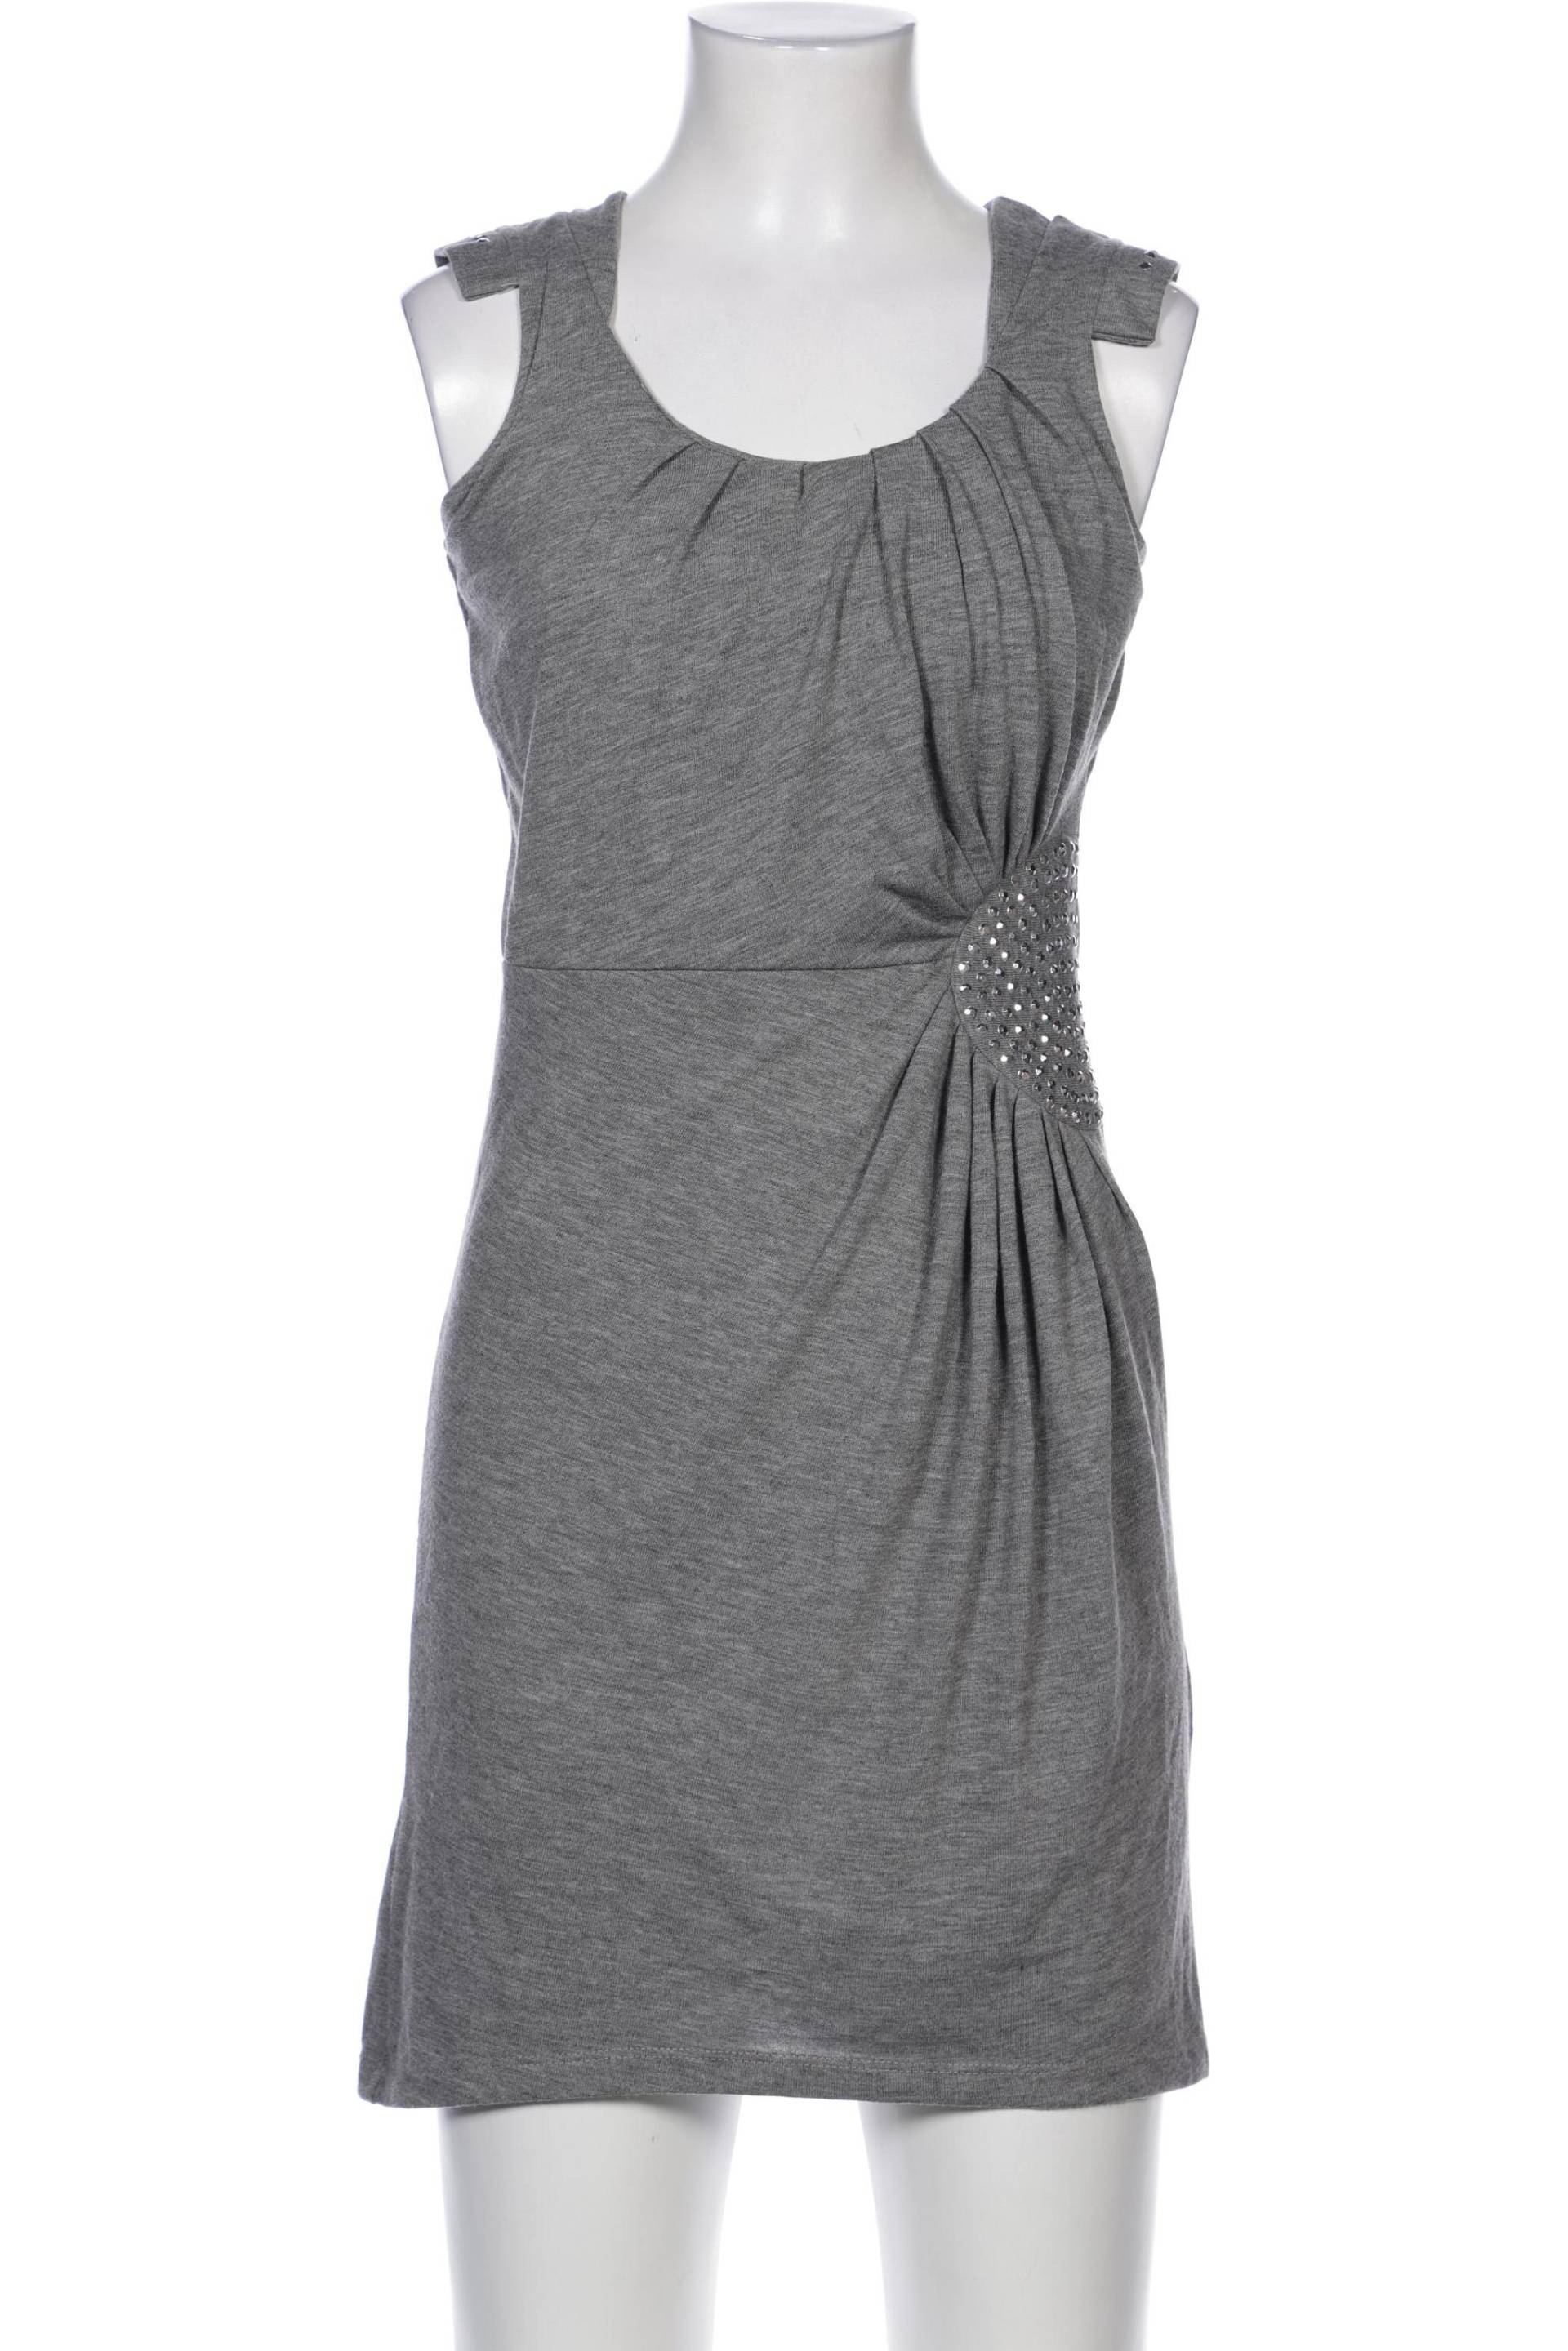 NAF NAF Damen Kleid, grau, Gr. 32 von Naf Naf